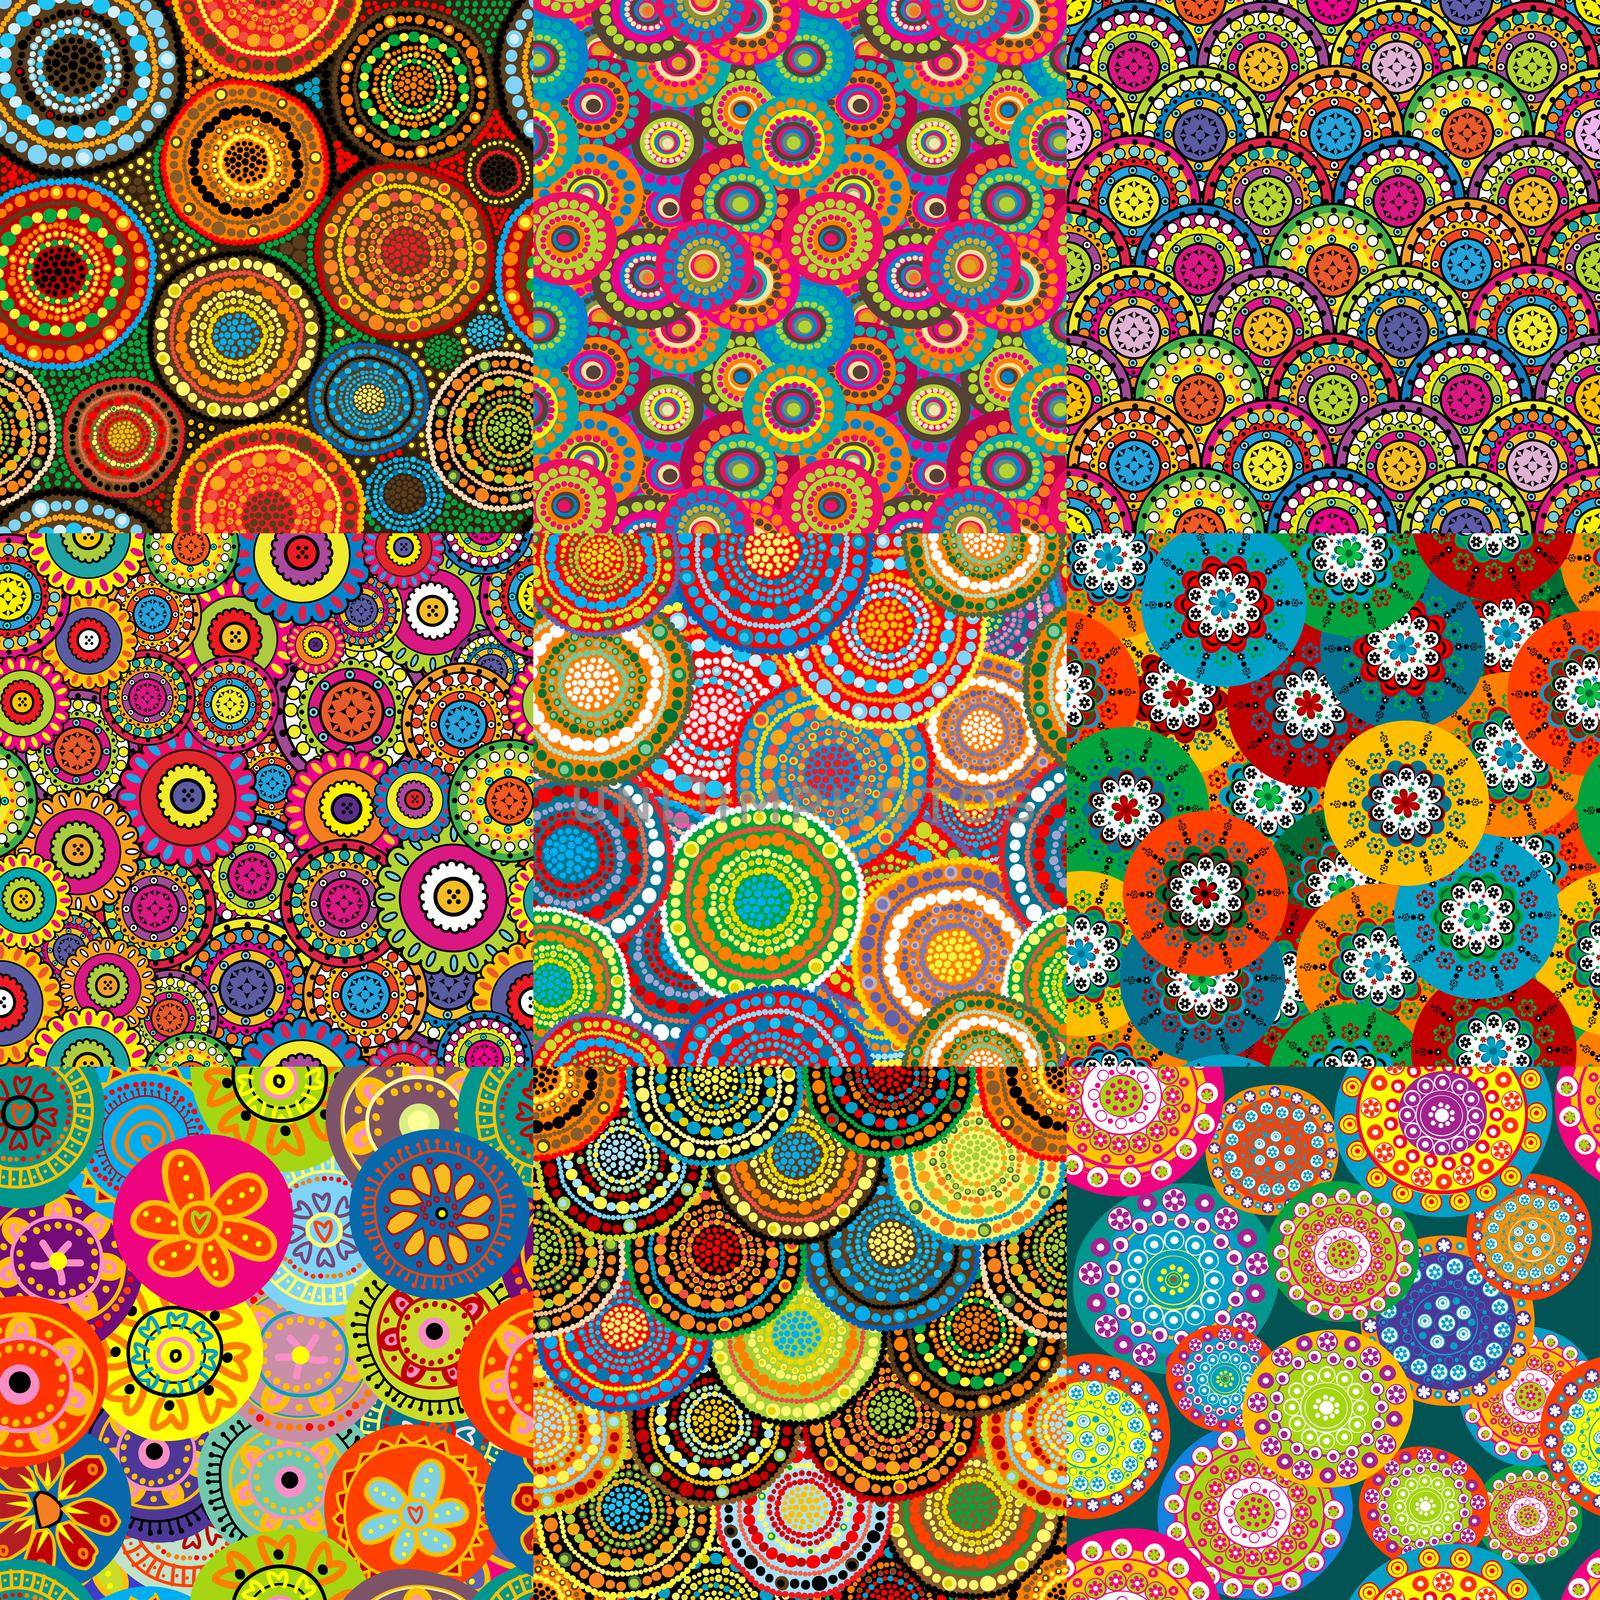 Set of nine colorful floral patterns